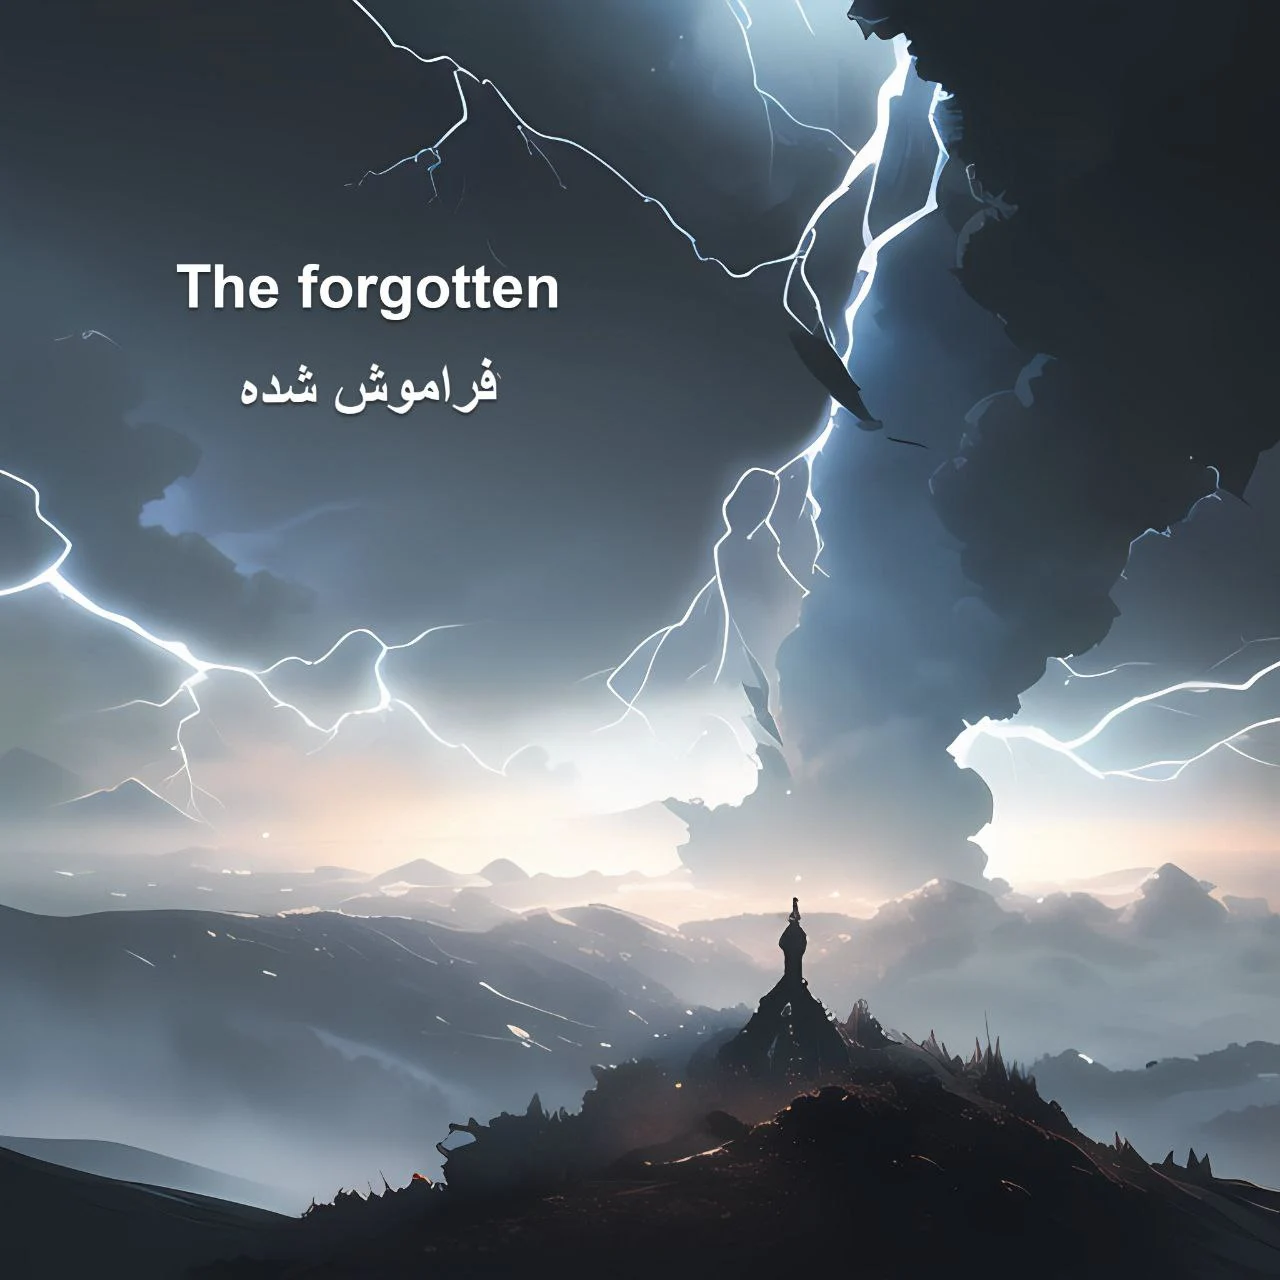 Cover Web Novel The Forgotten